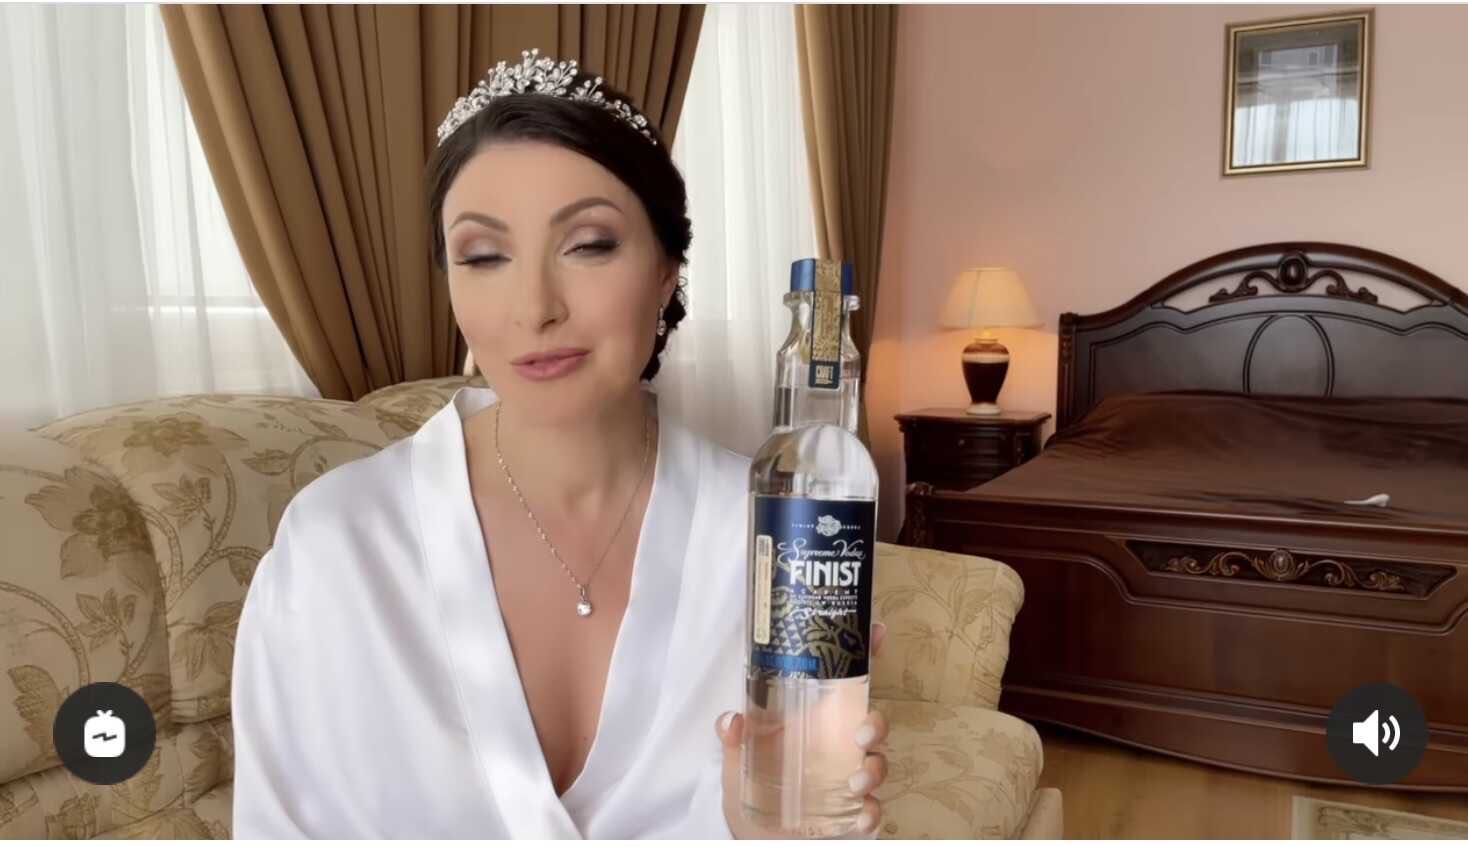 «На любые деньги готова, ради строителя»: Анастасия Макеева в свадебном платье покоробила подписчиков неуместной рекламой